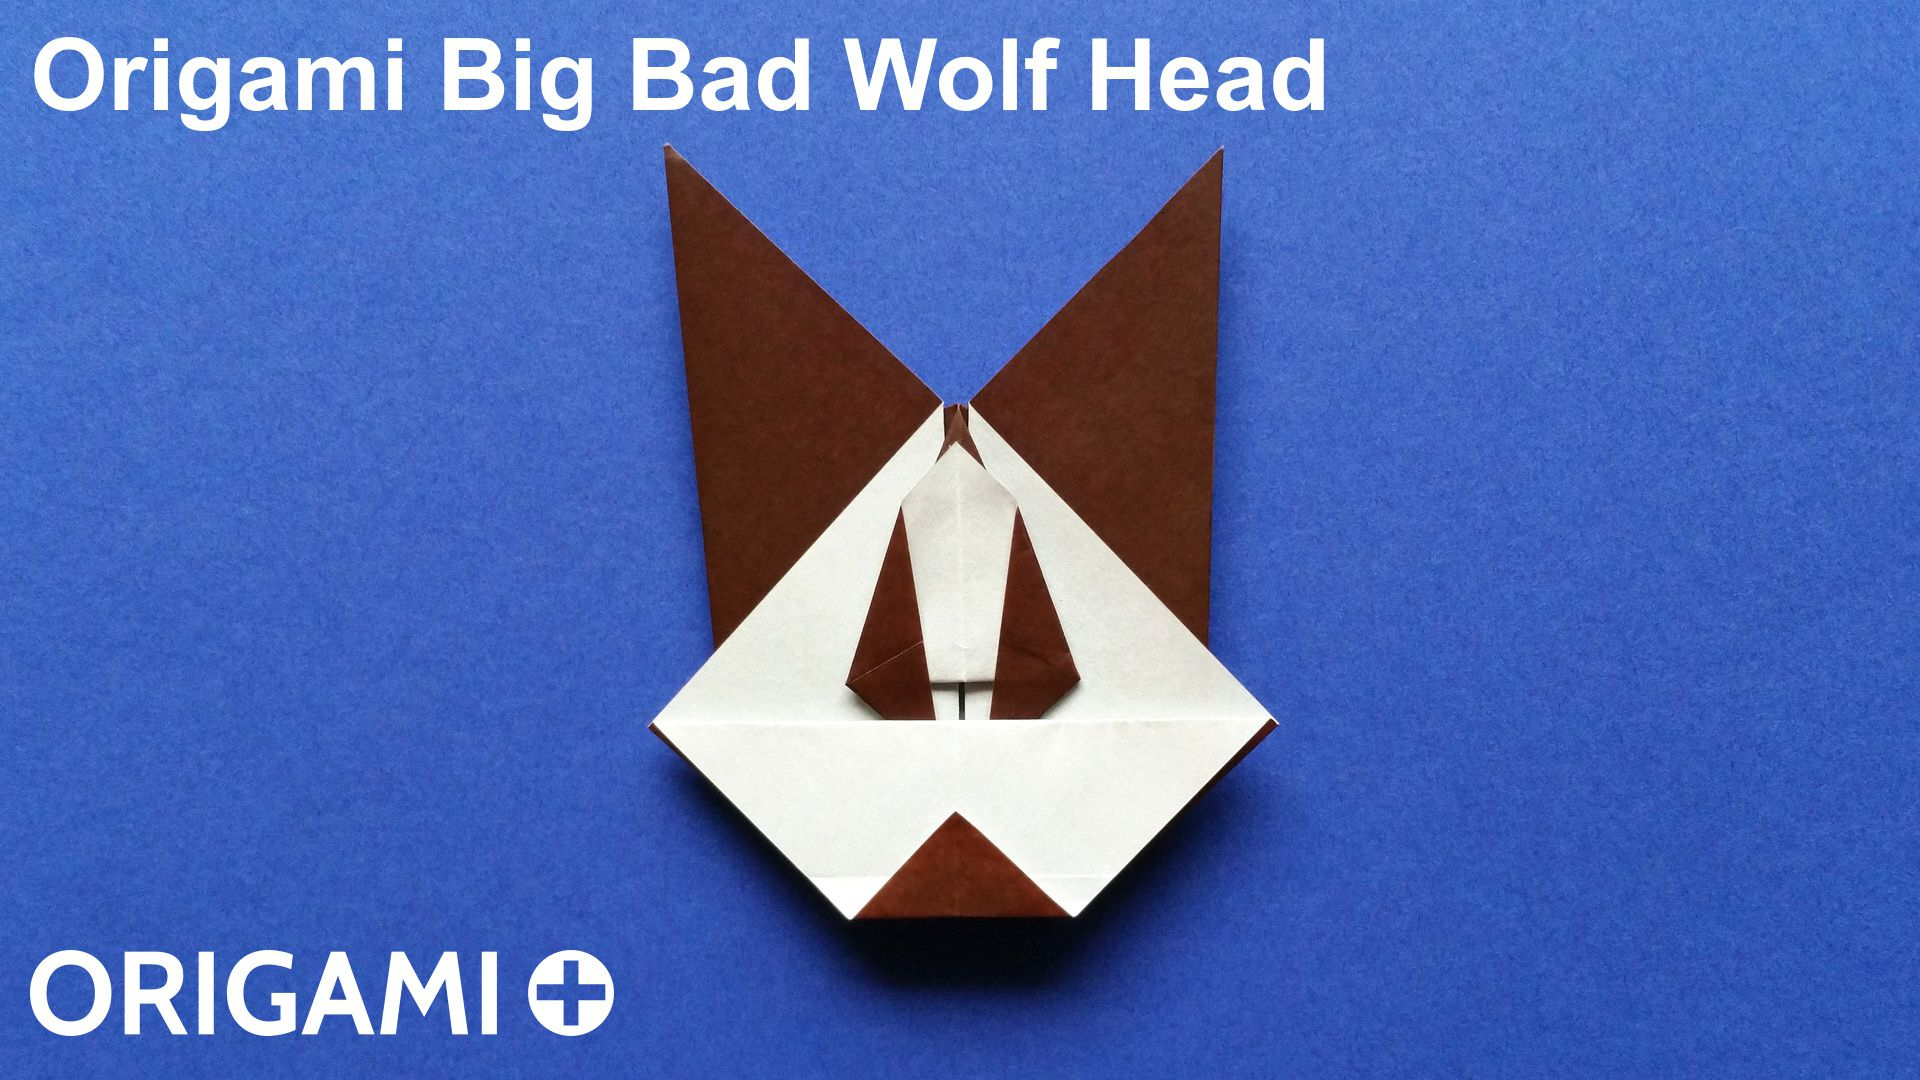 Origami Wolf Tutorial Origami Big Bad Wolf Head